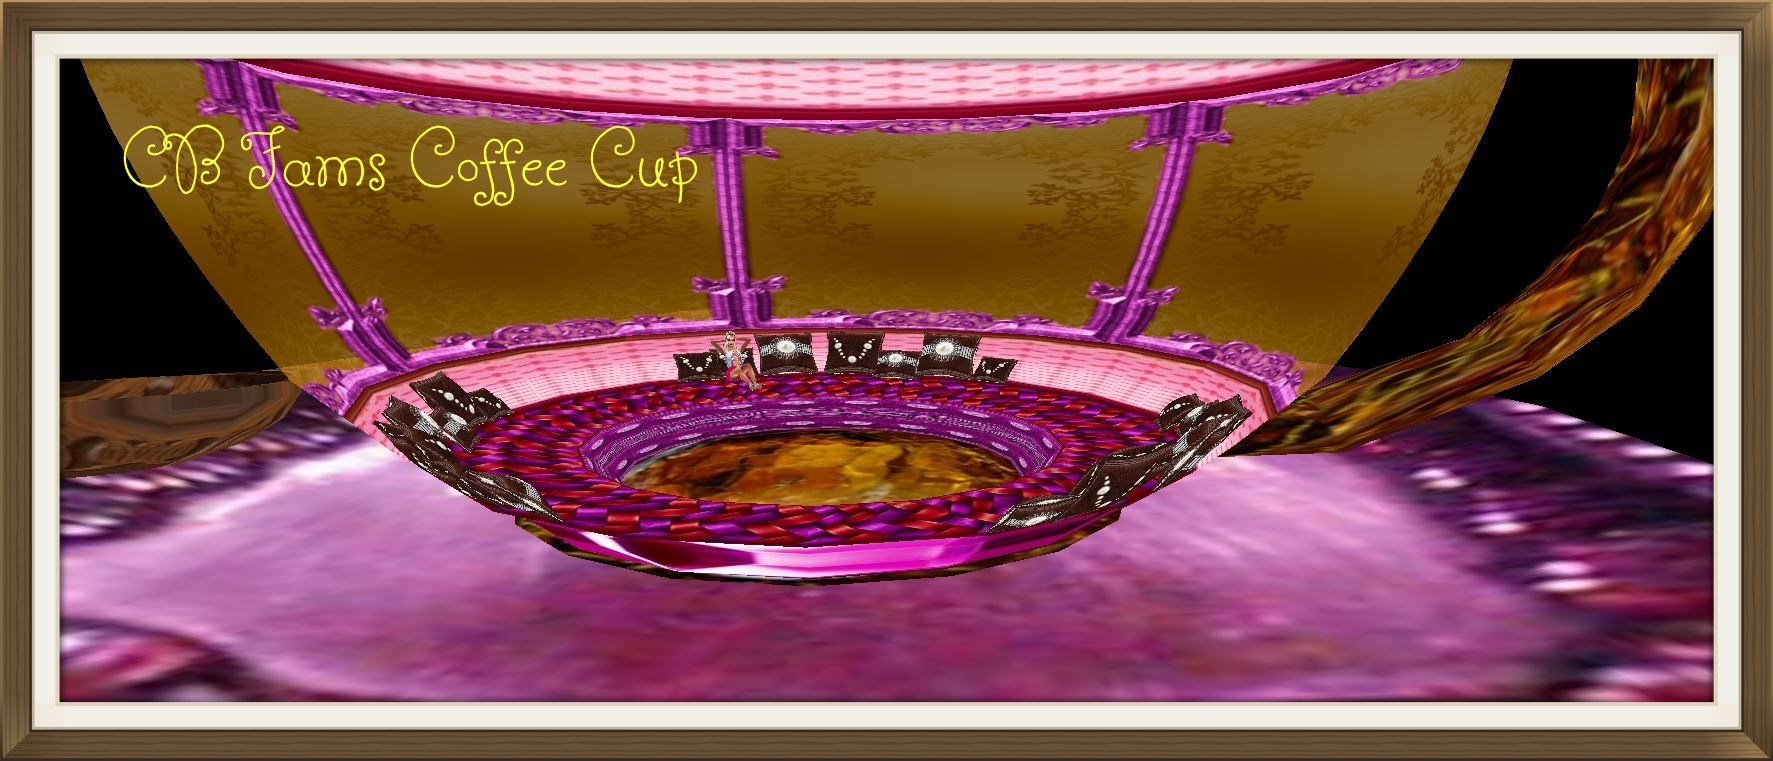 CB Fams Coffee Cup photo 264dce81-6952-499f-b345-d7b07b6f218e_zpsad74b953.jpg